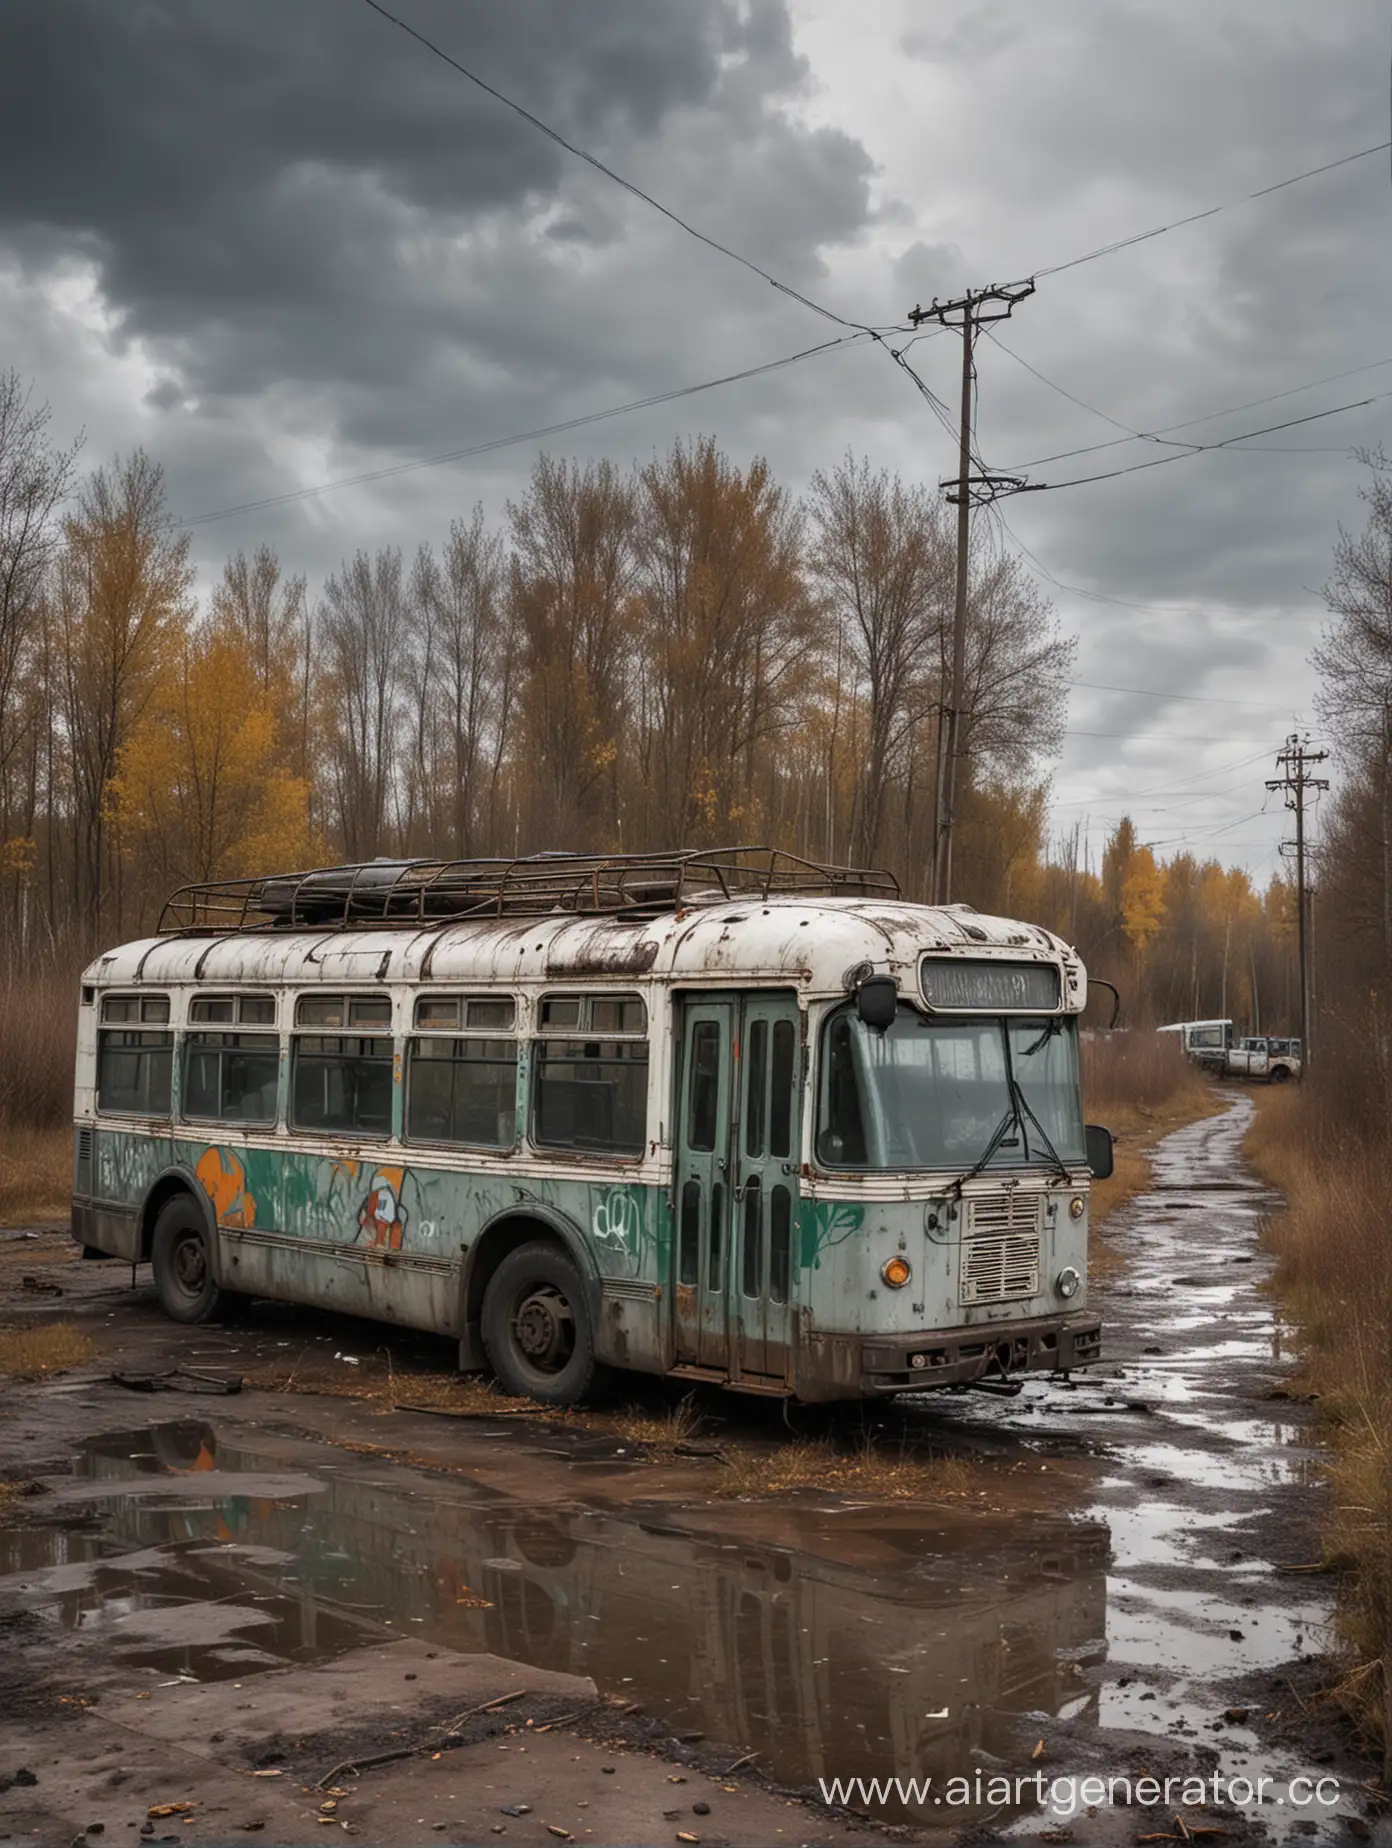 Заброшенный троллейбус в русском городе в заброшенных дворе осень дождь тучи серые граффити на стенах очень грязно 